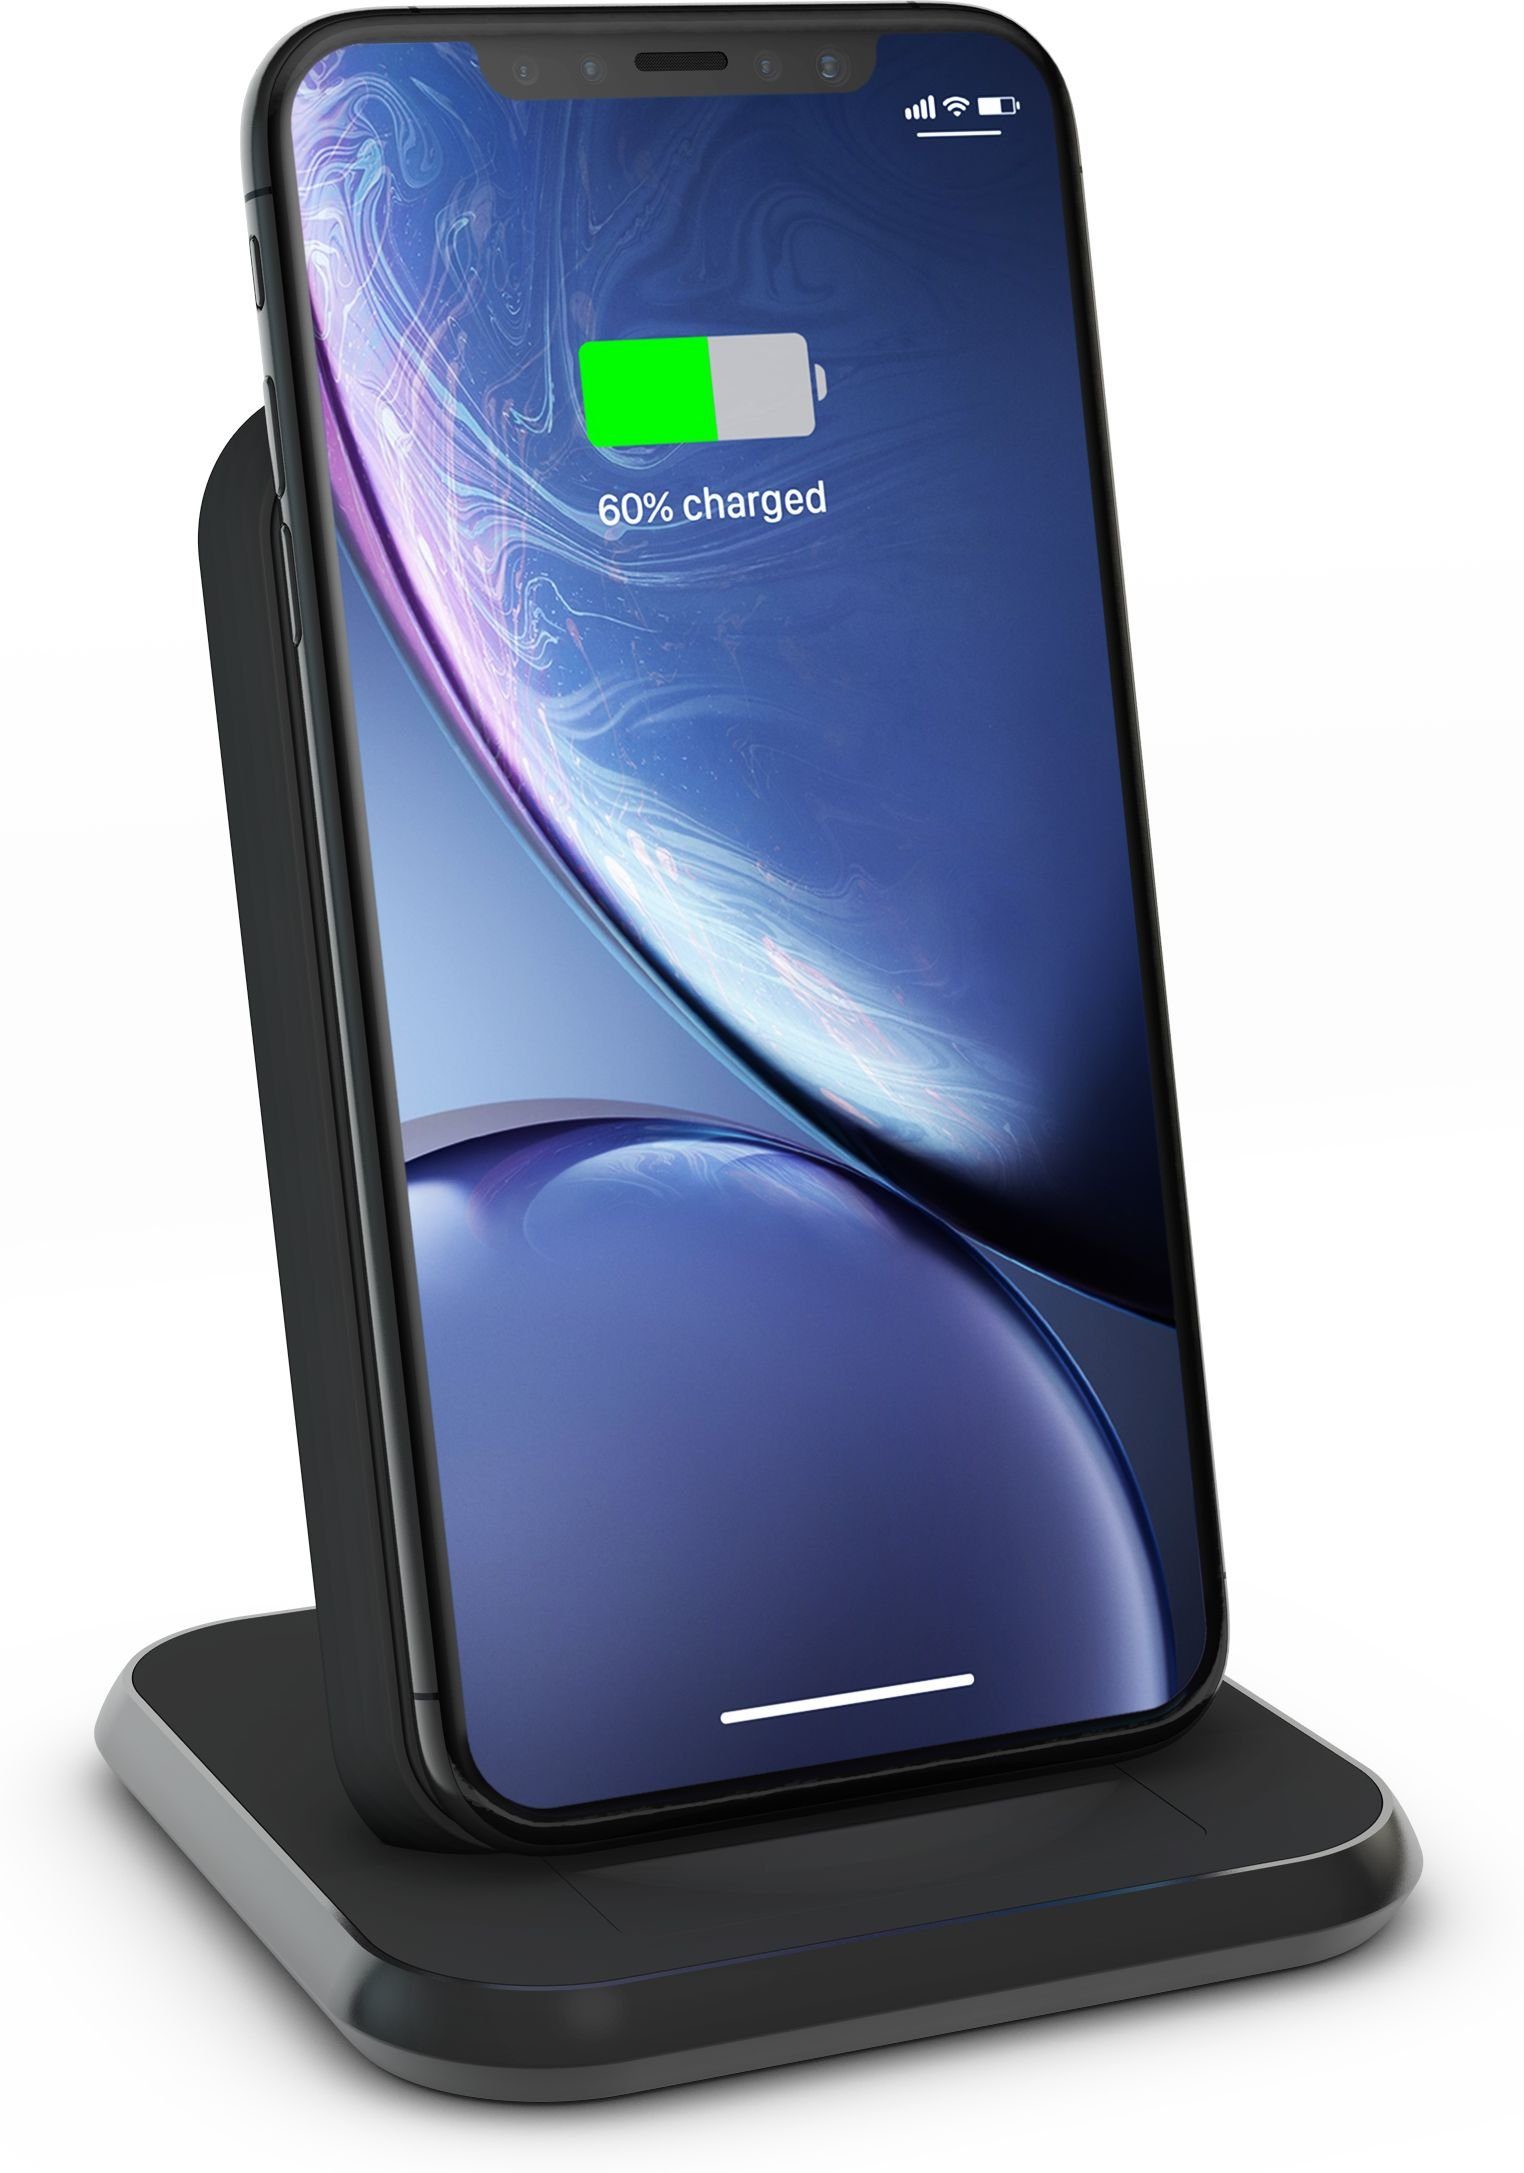 Zens Induktions-Ladegerät (Qi zertifizierter Aluminium Wireless Charger  Stand Schwarz, Unterstützt Fast Wireless Charging mit bis zu 10Watt, USB  Anschluss für weitere Geräte, Kompatibel mit allen Qi-fähigen Telefonen)